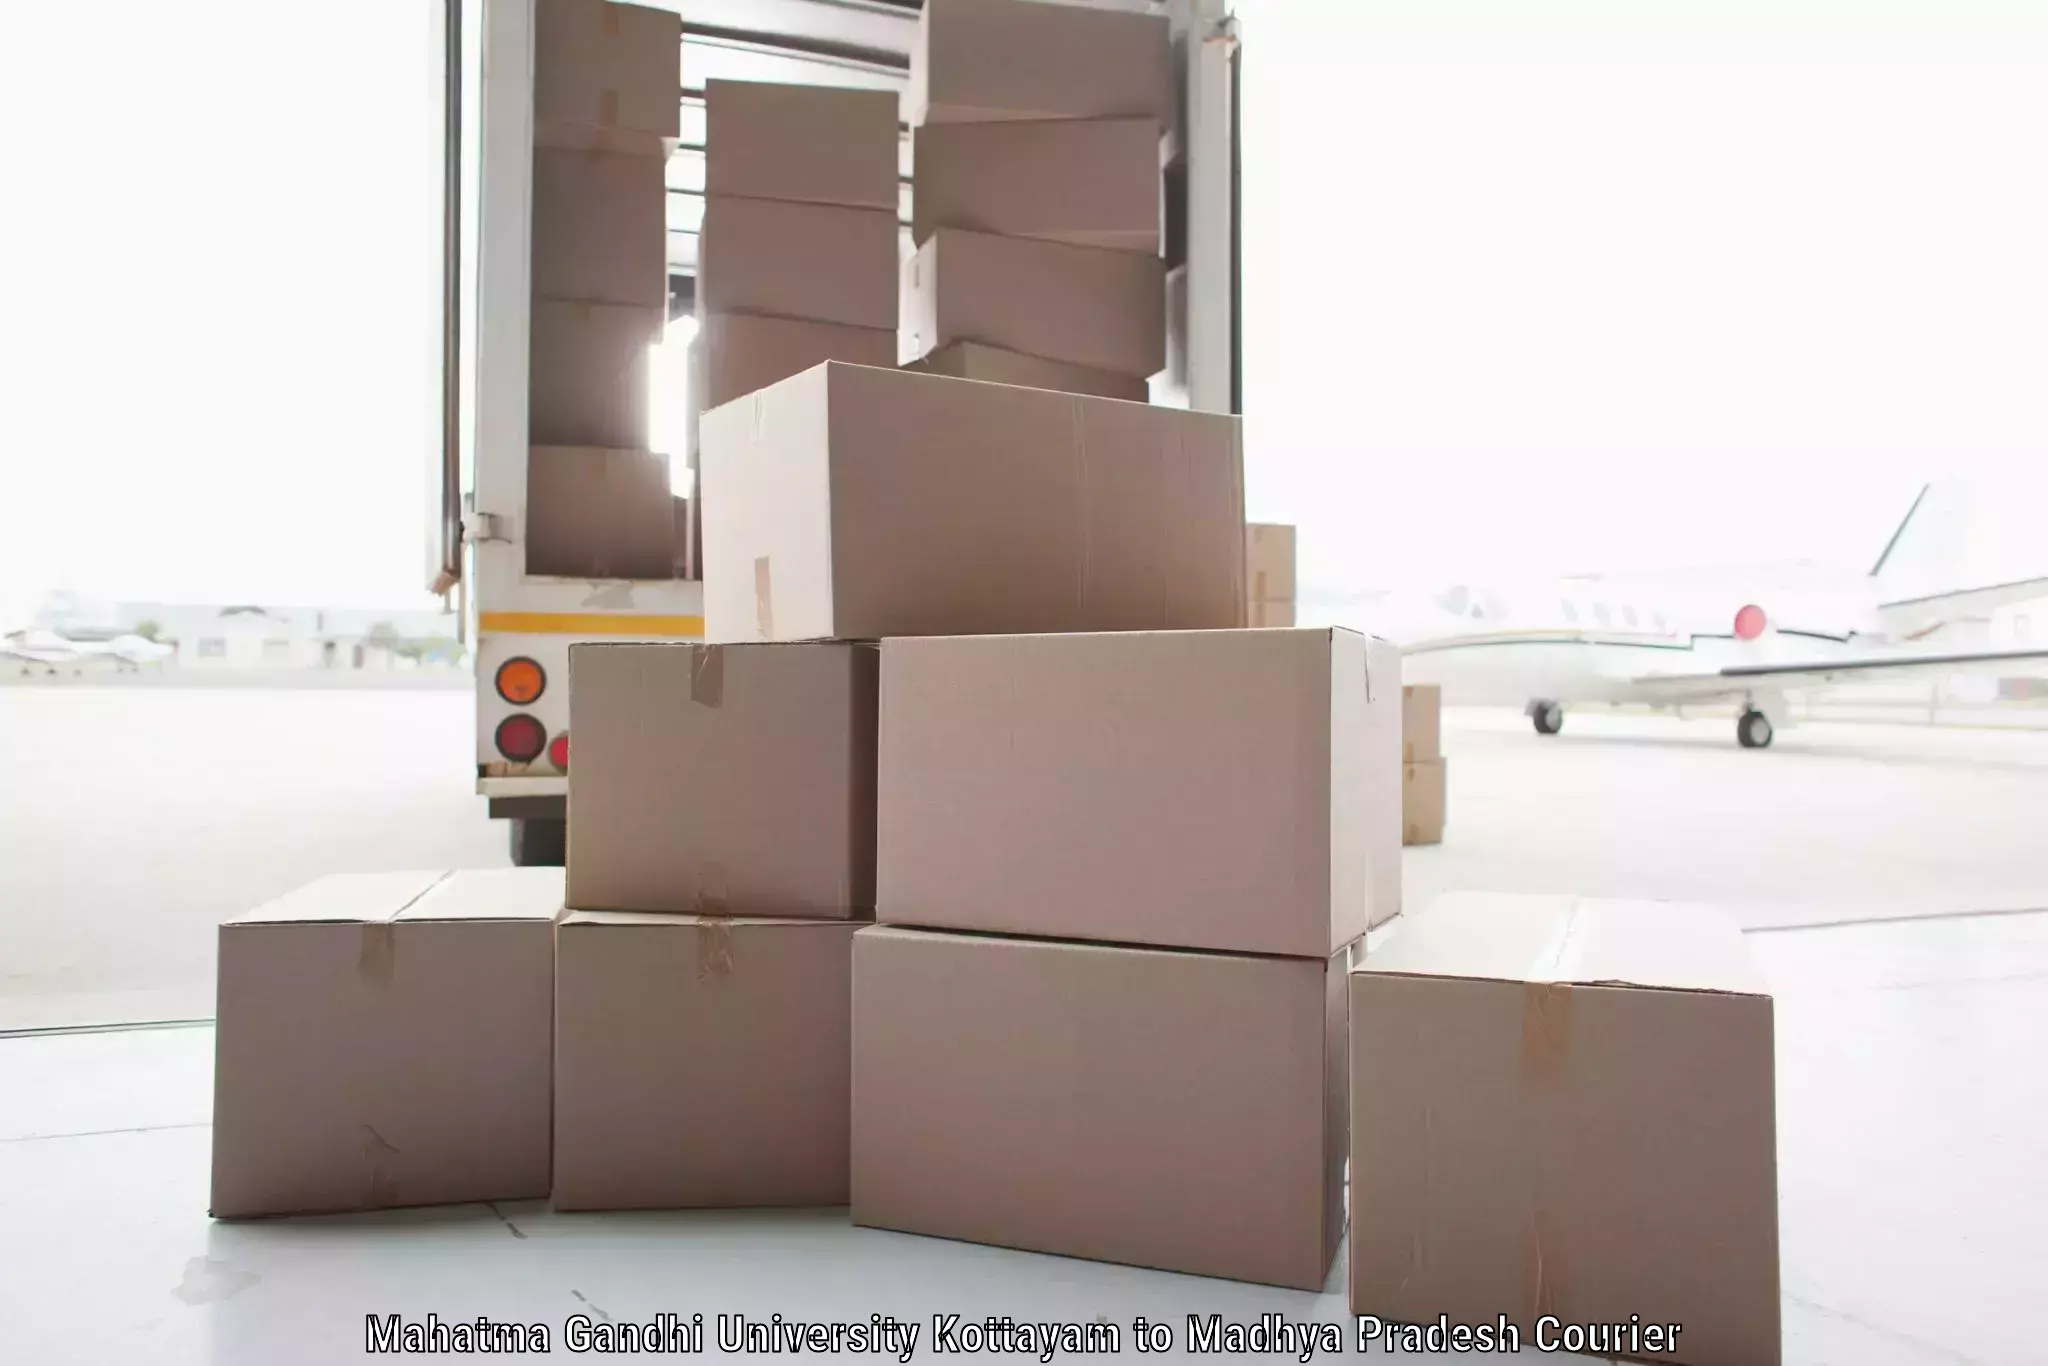 Customer-centric shipping Mahatma Gandhi University Kottayam to Mandsaur